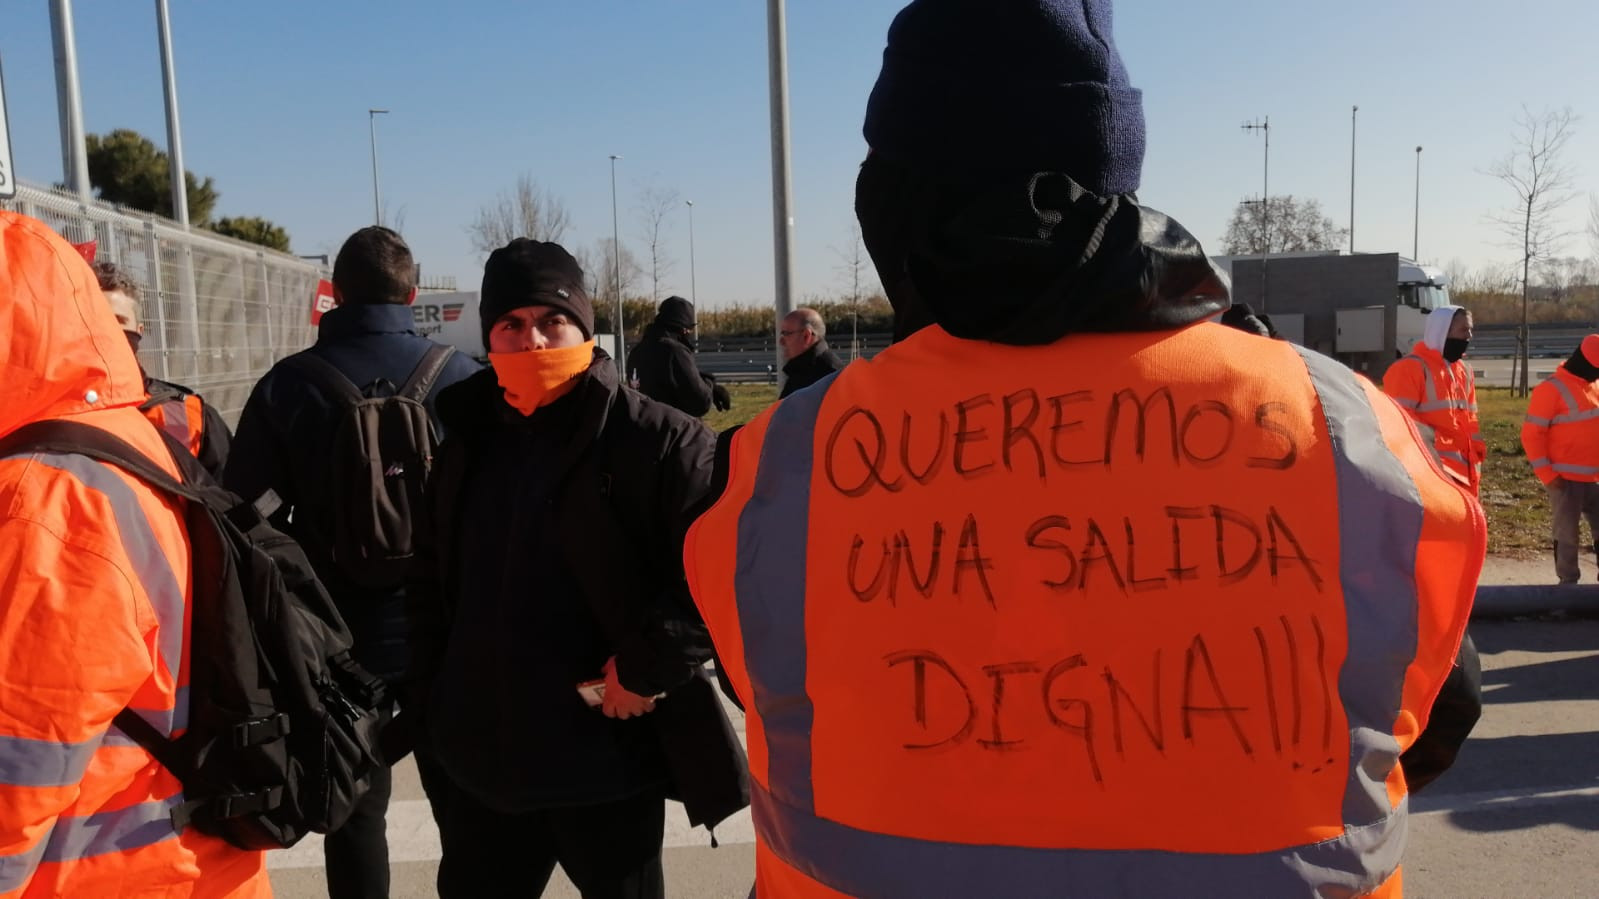 Un trabajador de Amazon en la manifestación frente a la nave en El Prat / A.B - M.A